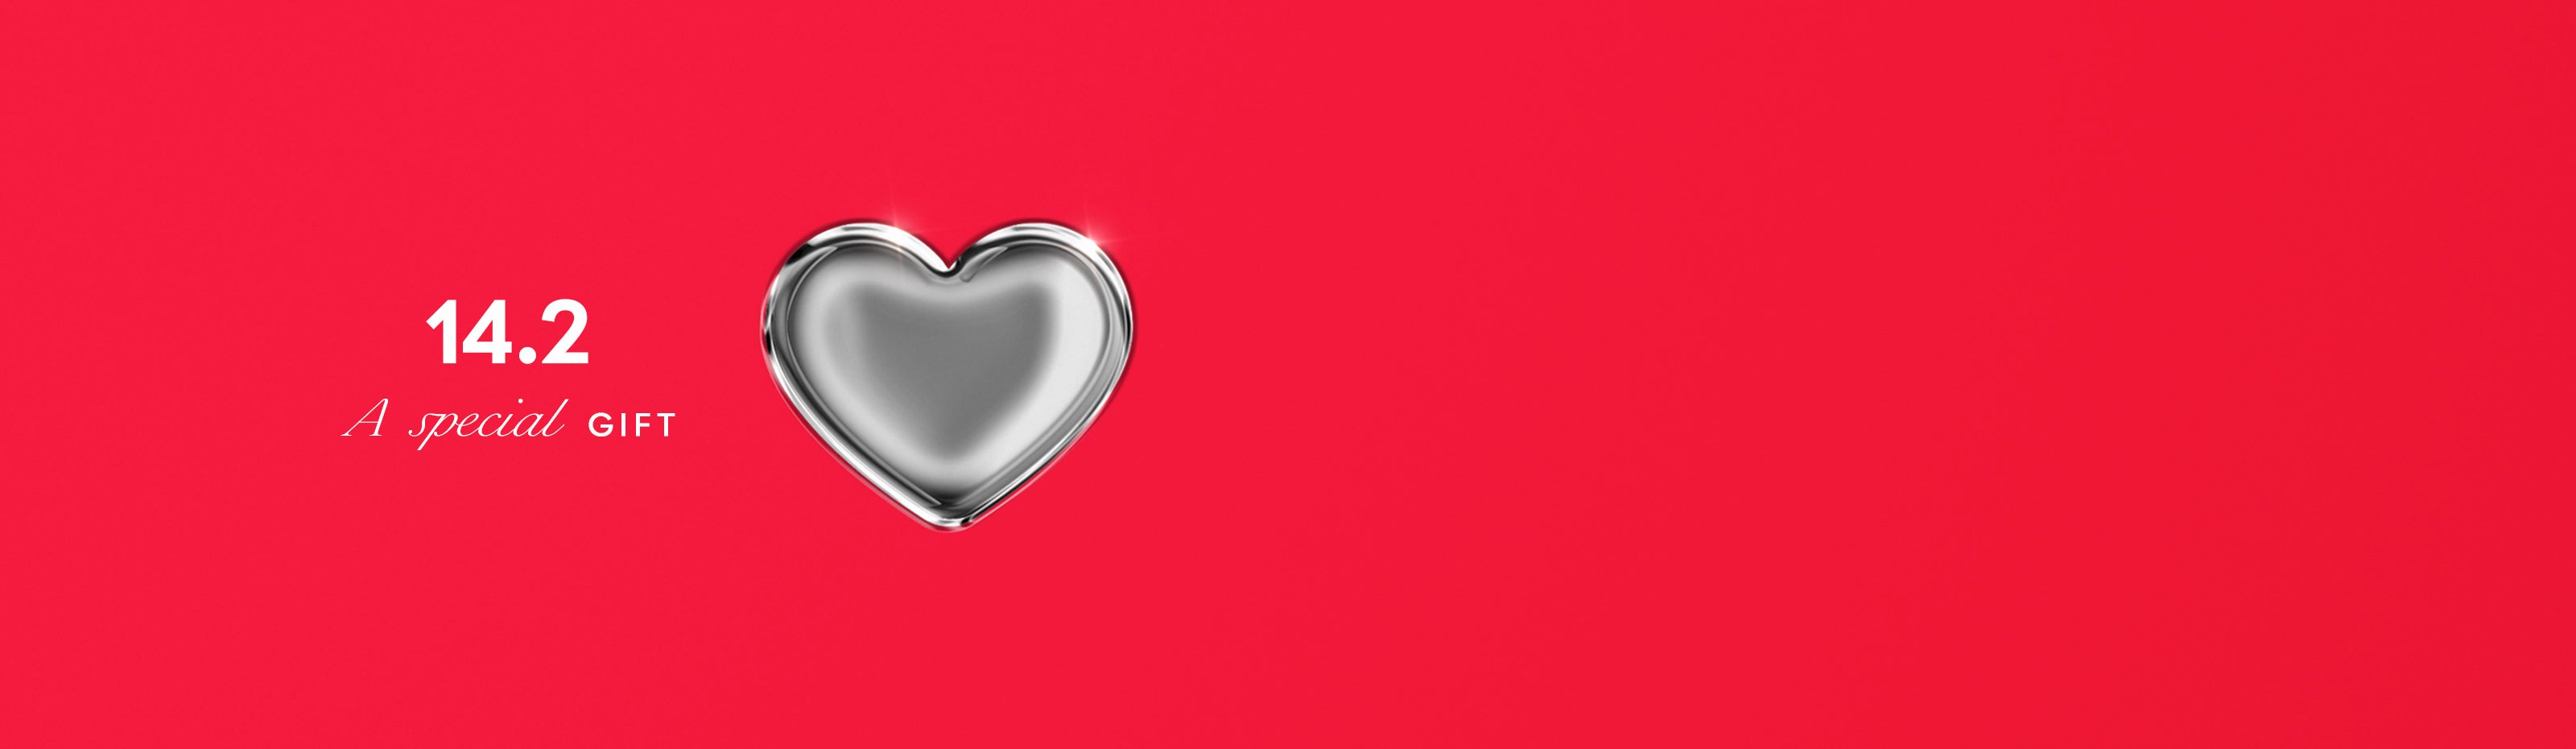 לב בצבע כסוף עם כיתוב ״מתנה מיוחדת״ עם תאריך של יום אהבה 14.2.2023 לדף קולקציה של מתנות מקוריות ומרגשות ליום אהבה